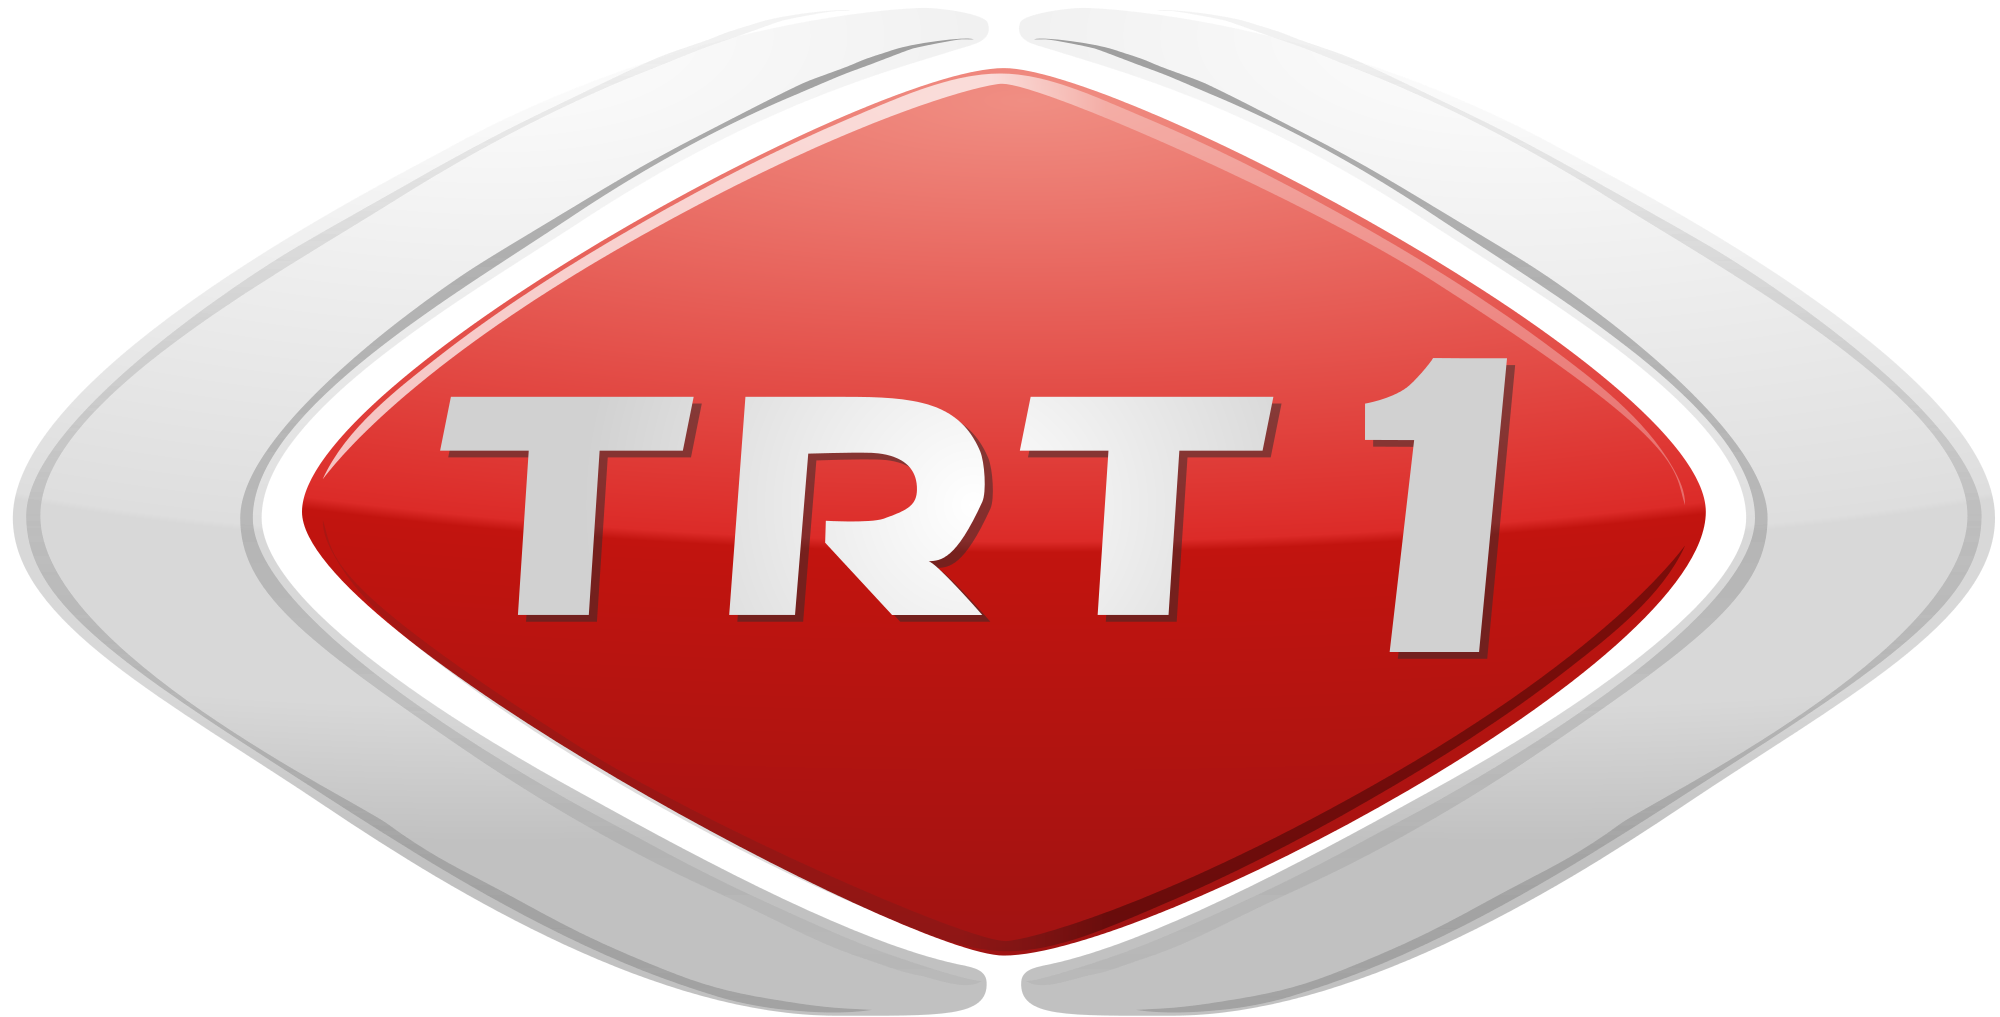 Телеканал примера 1 1. Турецкий Телеканал TRT.. Логотипы турецких телеканалов. TRT 3.